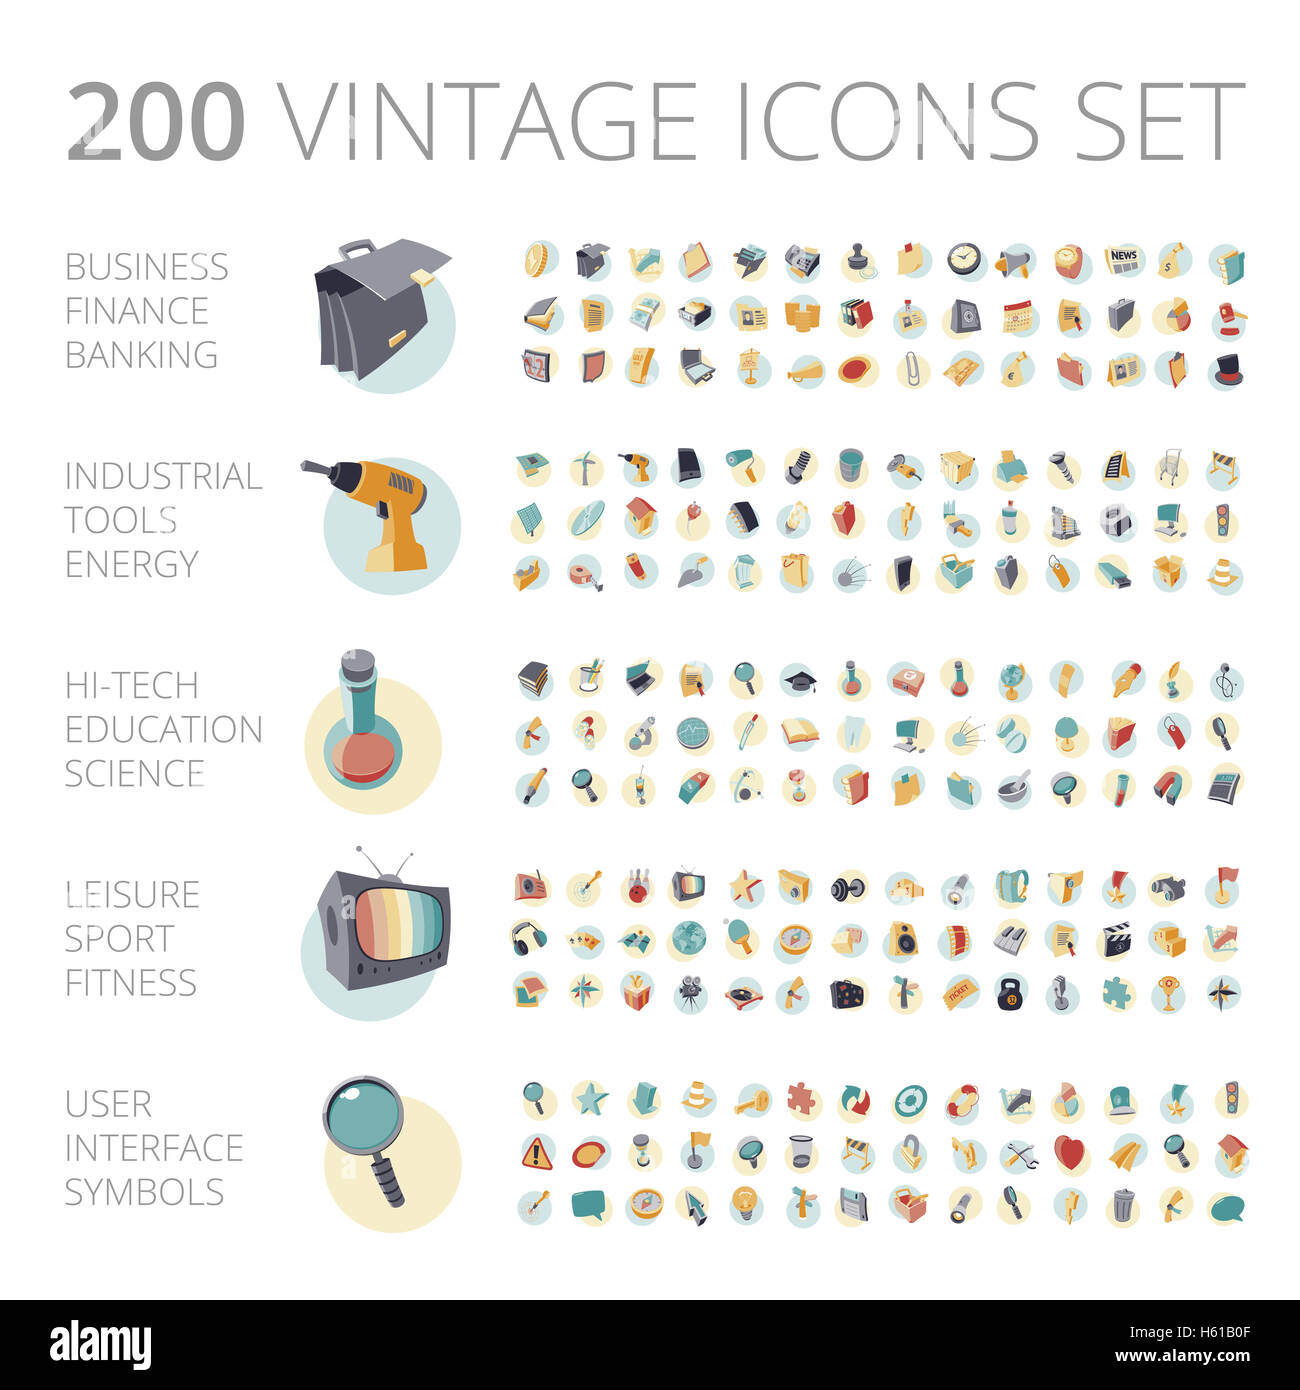 Vintage icons set pour les affaires, la technologie, l'éducation, de l'industrie et le sport. Banque D'Images